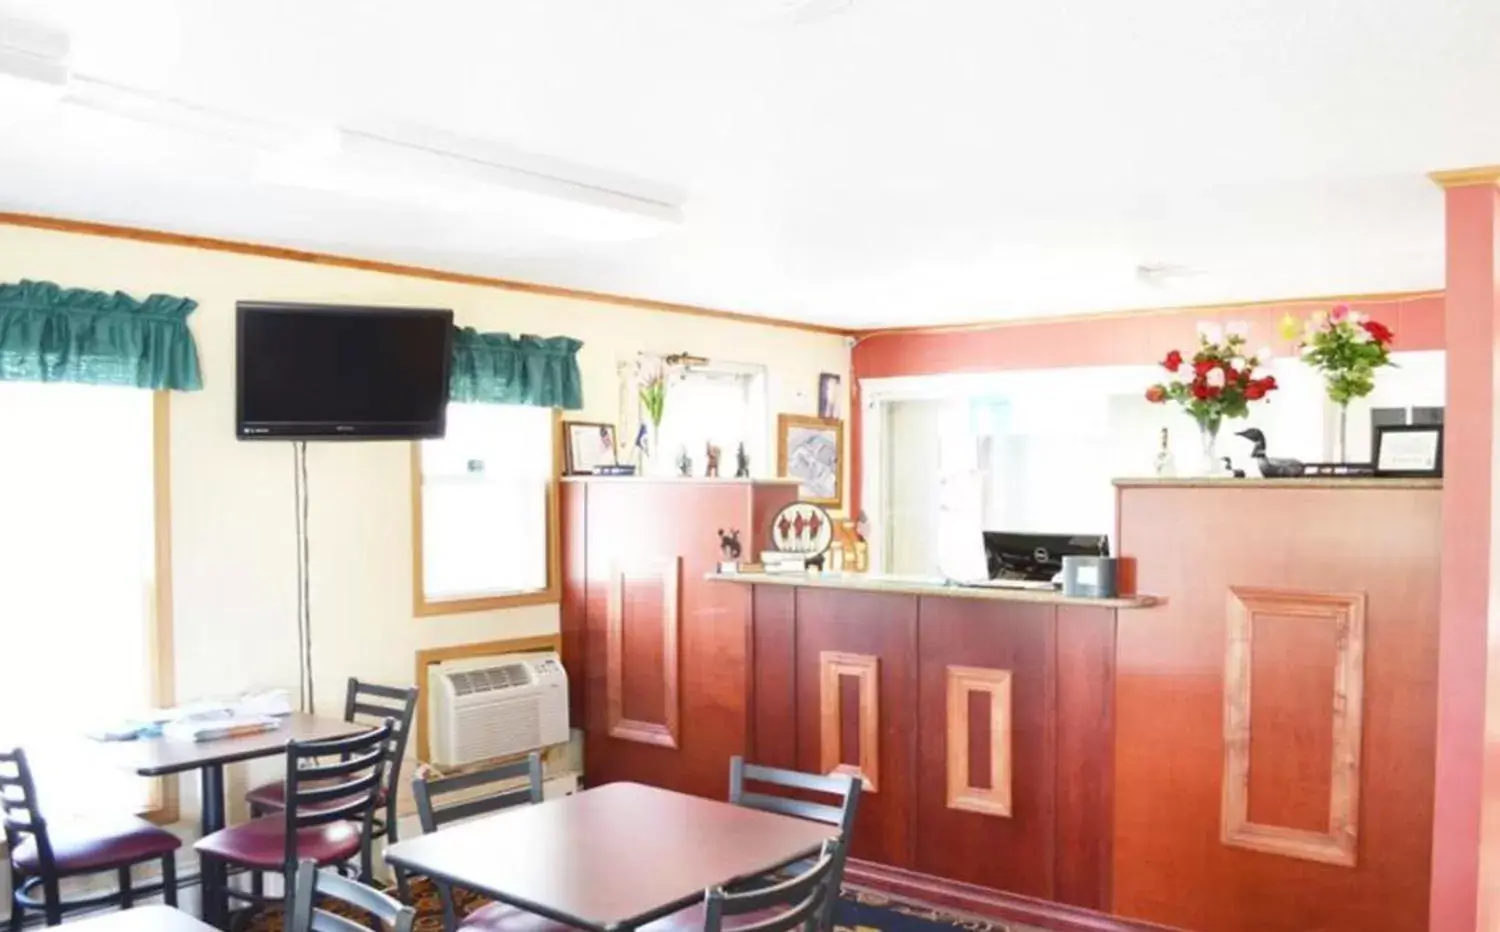 Lobby or reception, Kitchen/Kitchenette in Budget Inn Fairmont